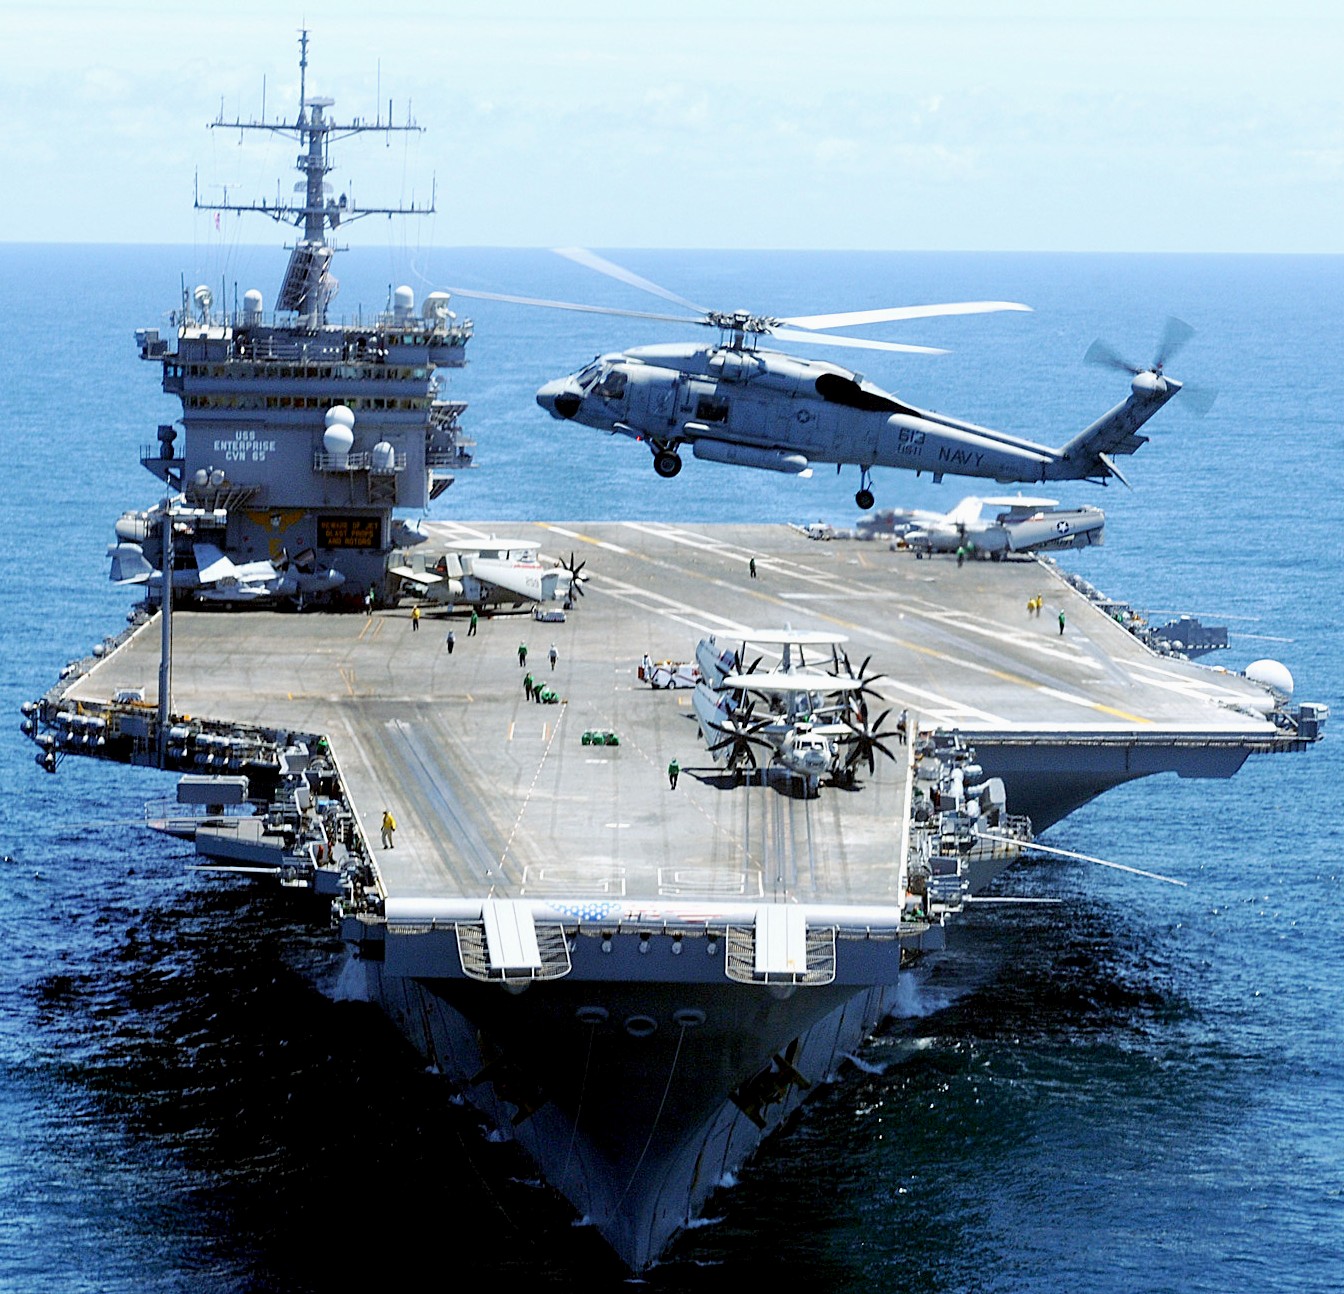 cvn-65 uss enterprise aircraft carrier us navy 35